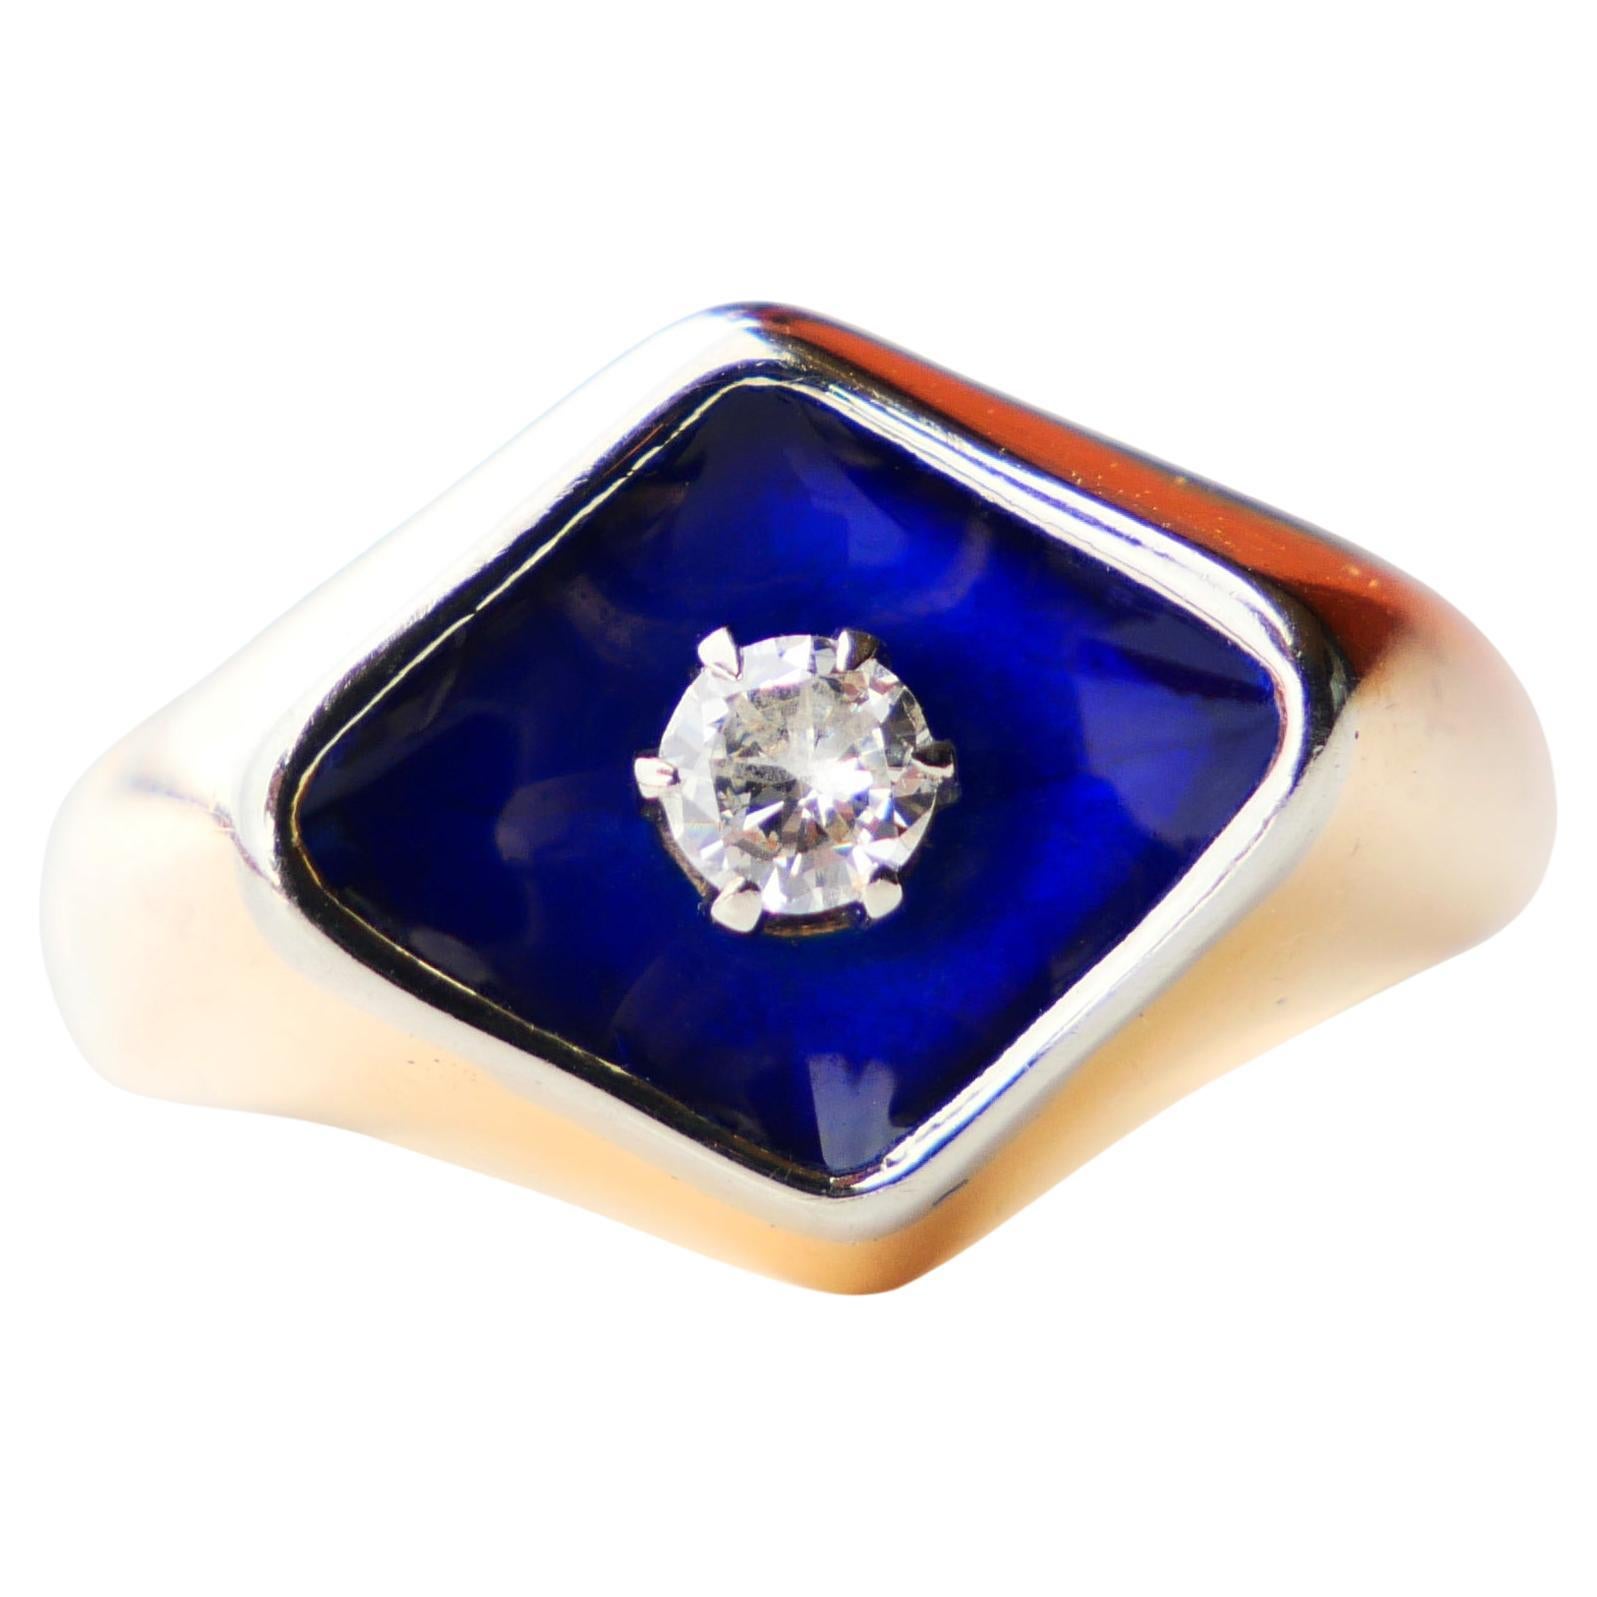 Old Ring Bague au Firmament Diamond Blue Enamel 18K Gold Ø5.75 US/ 5.5 gr